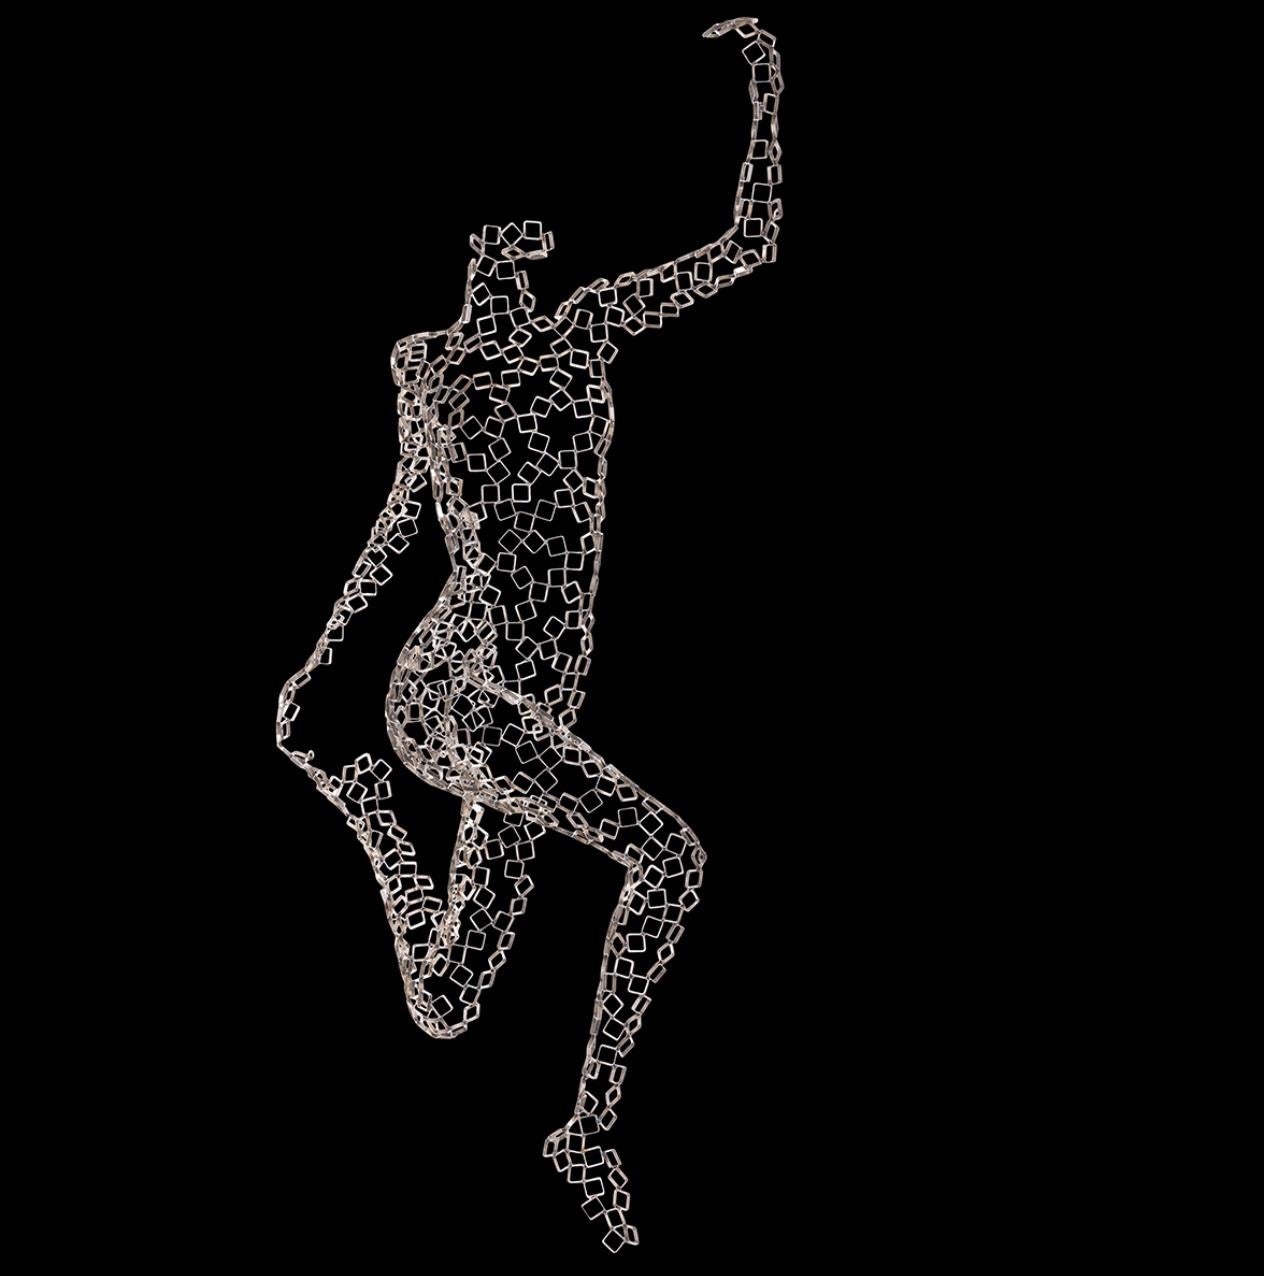 Dancer Isidora - Black Figurative Sculpture by Rainer Lagemann